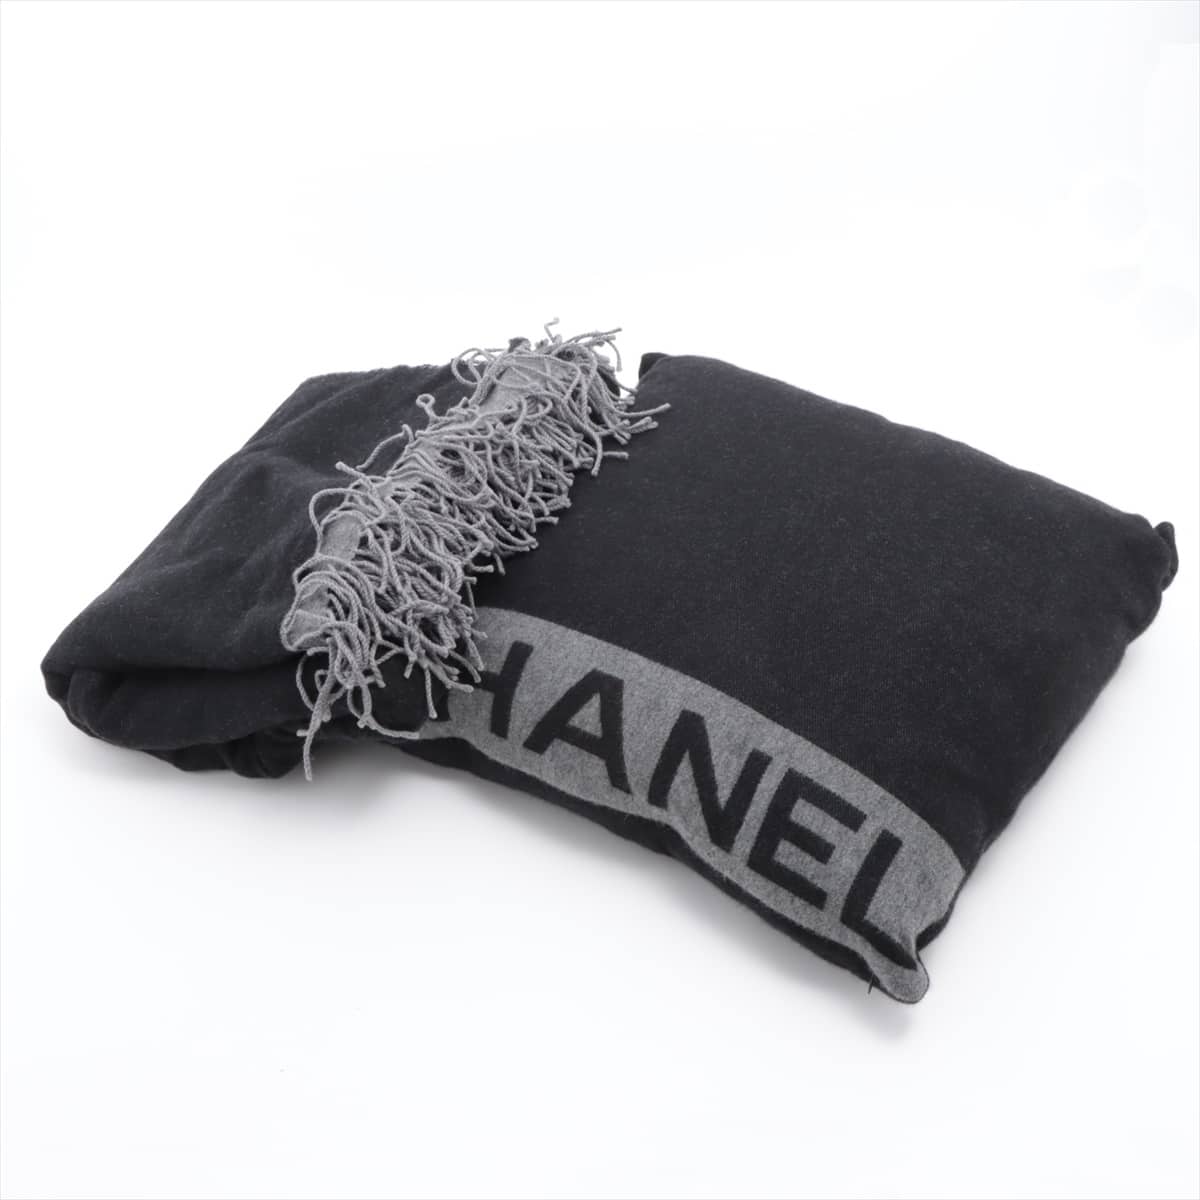 Chanel Logo Cushion Wool & Cashmere Grey Lint on fabric cushion blanket set